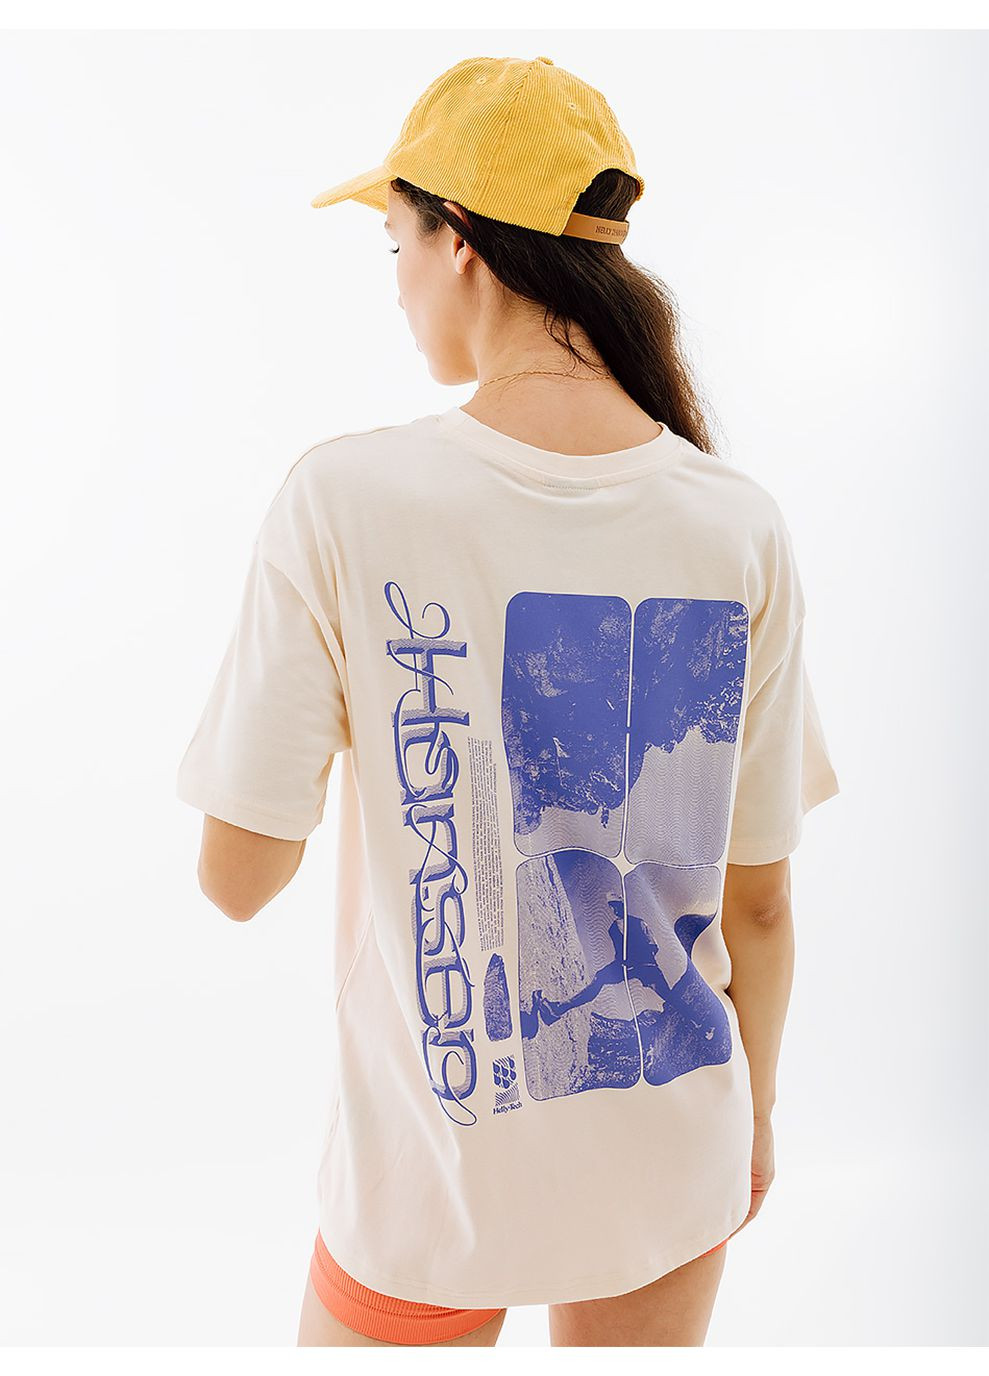 Бежевая летняя женская футболка w play t-shirt бежевый Helly Hansen